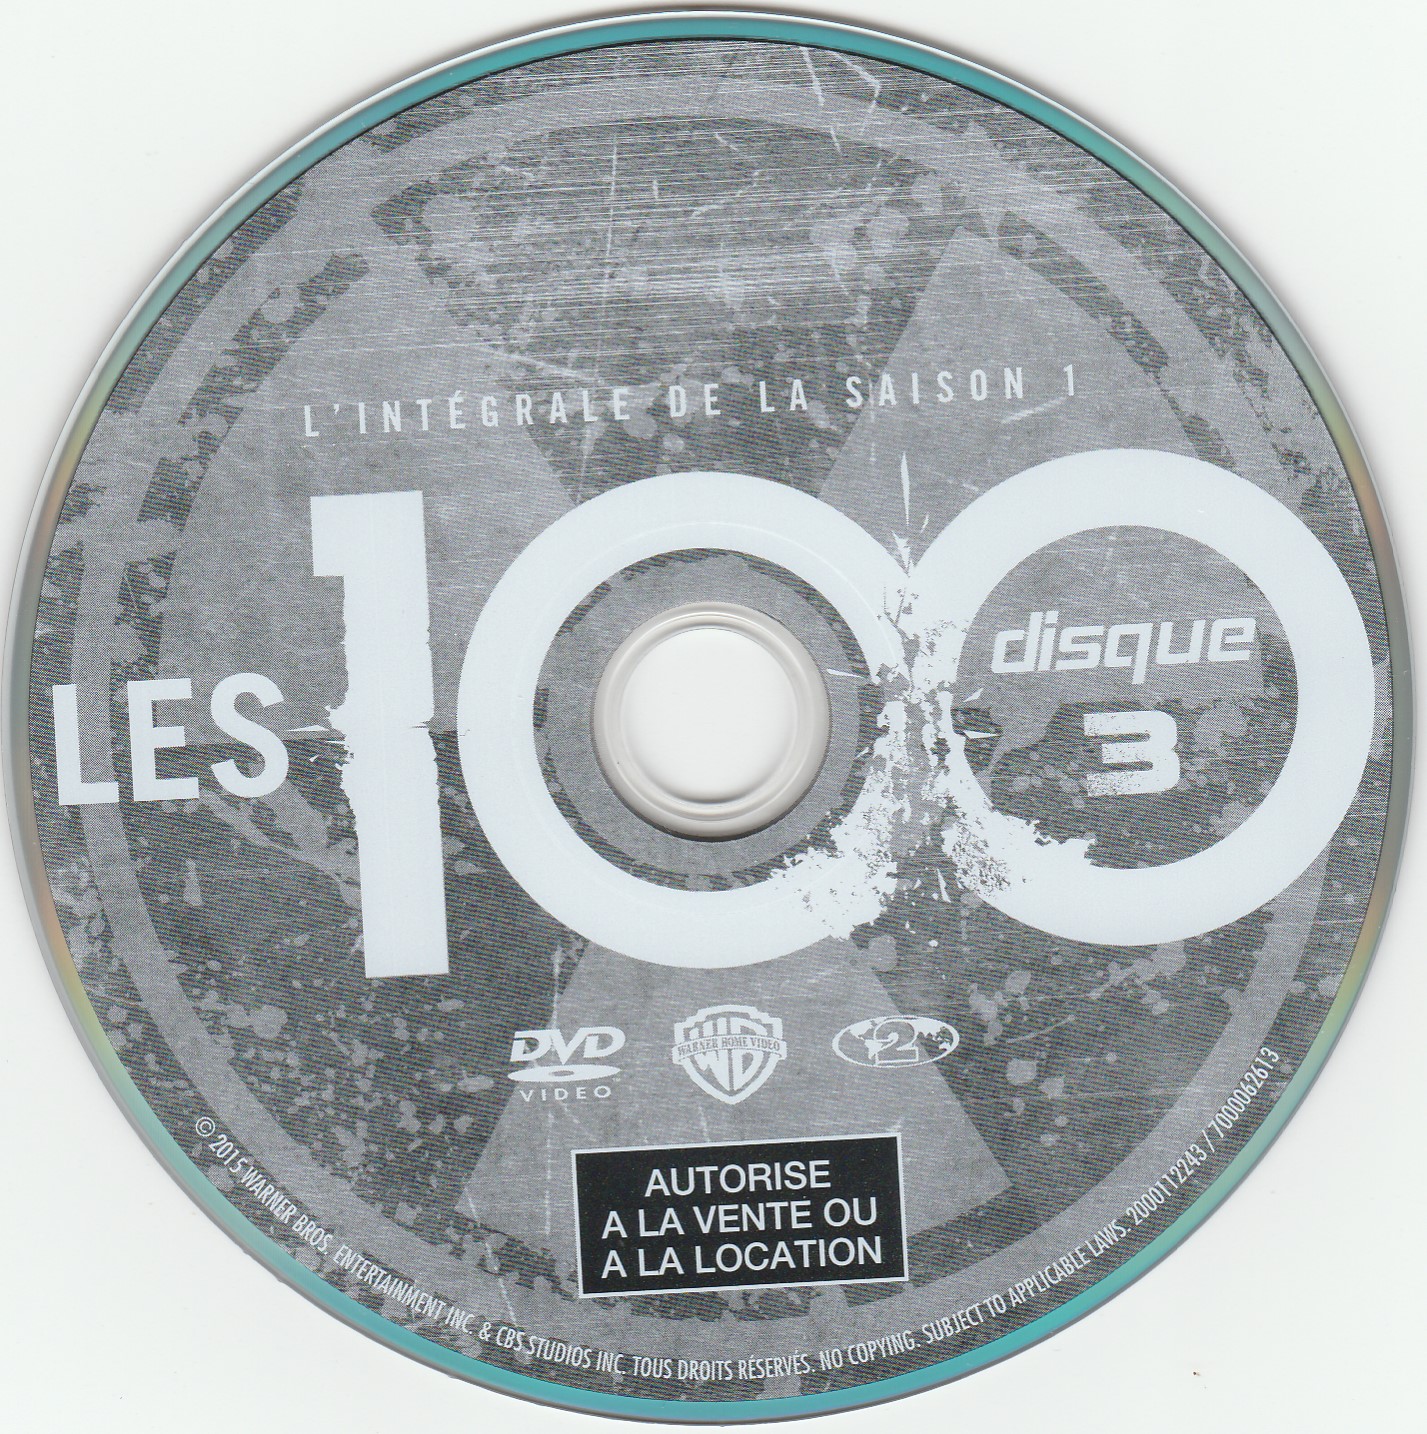 Les 100 Saison 1 DISC 3